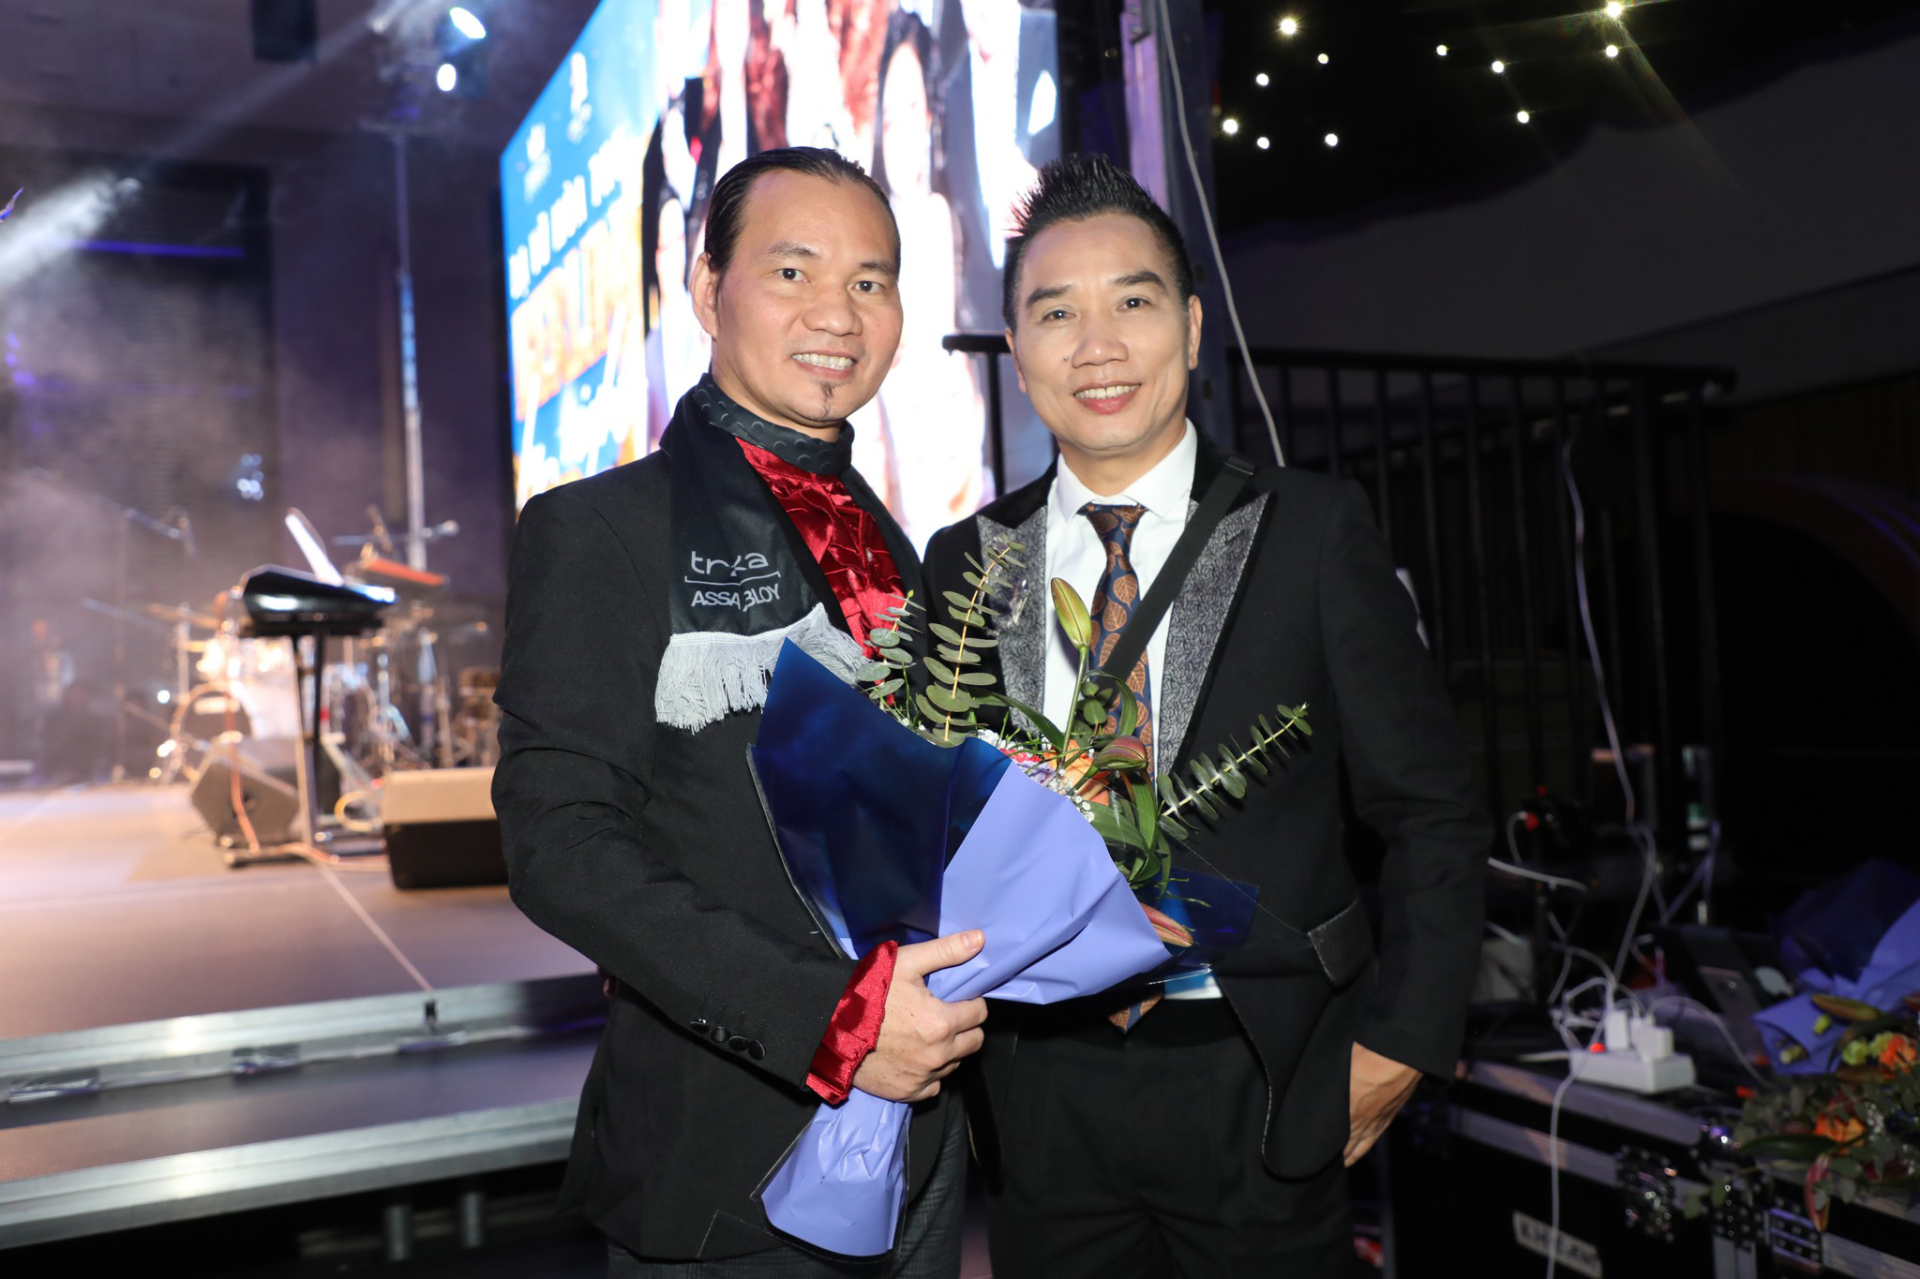 Sau 14 năm rời nhóm nhạc đình đám, nam ca sĩ Việt bất ngờ giành giải nhất cuộc thi hát tại Châu Âu - ảnh 2